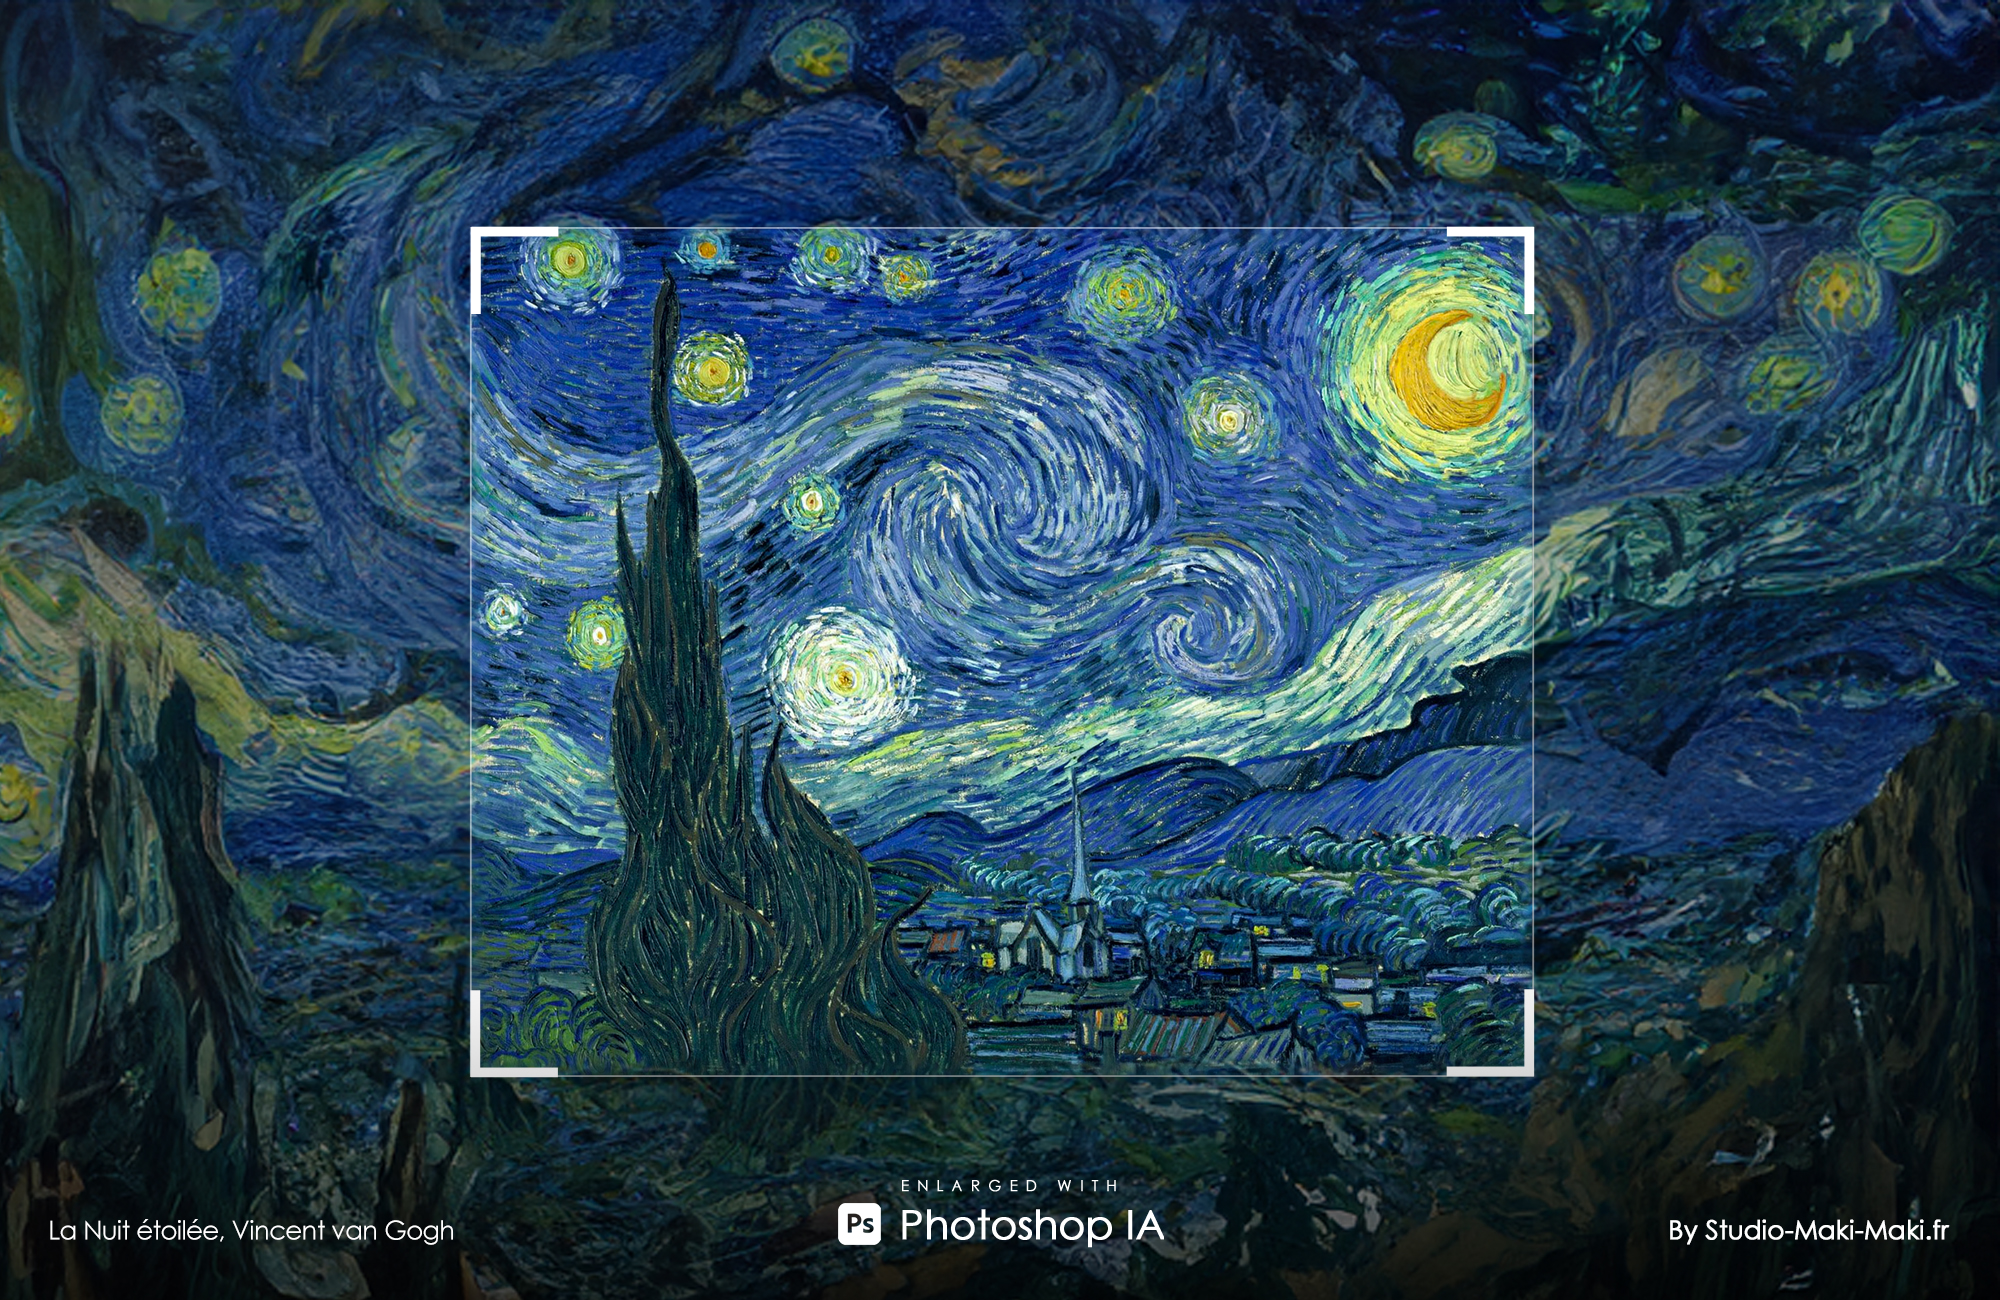 La Nuit étoilée, Vincent van Gogh - Enlarged with Photoshop IA - By Studio Maki Maki